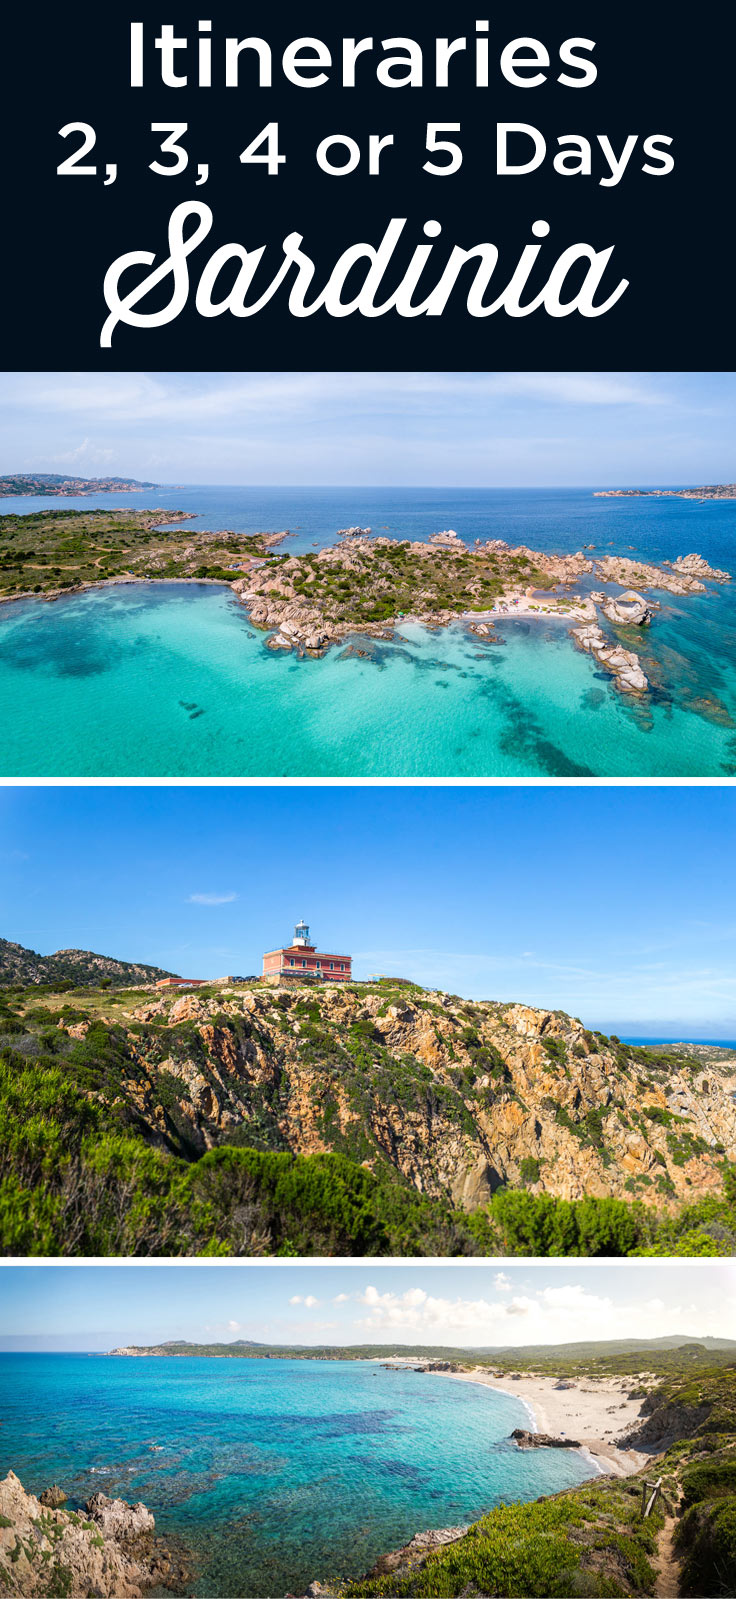 Sardinia itinerary 2 3 4 5 days